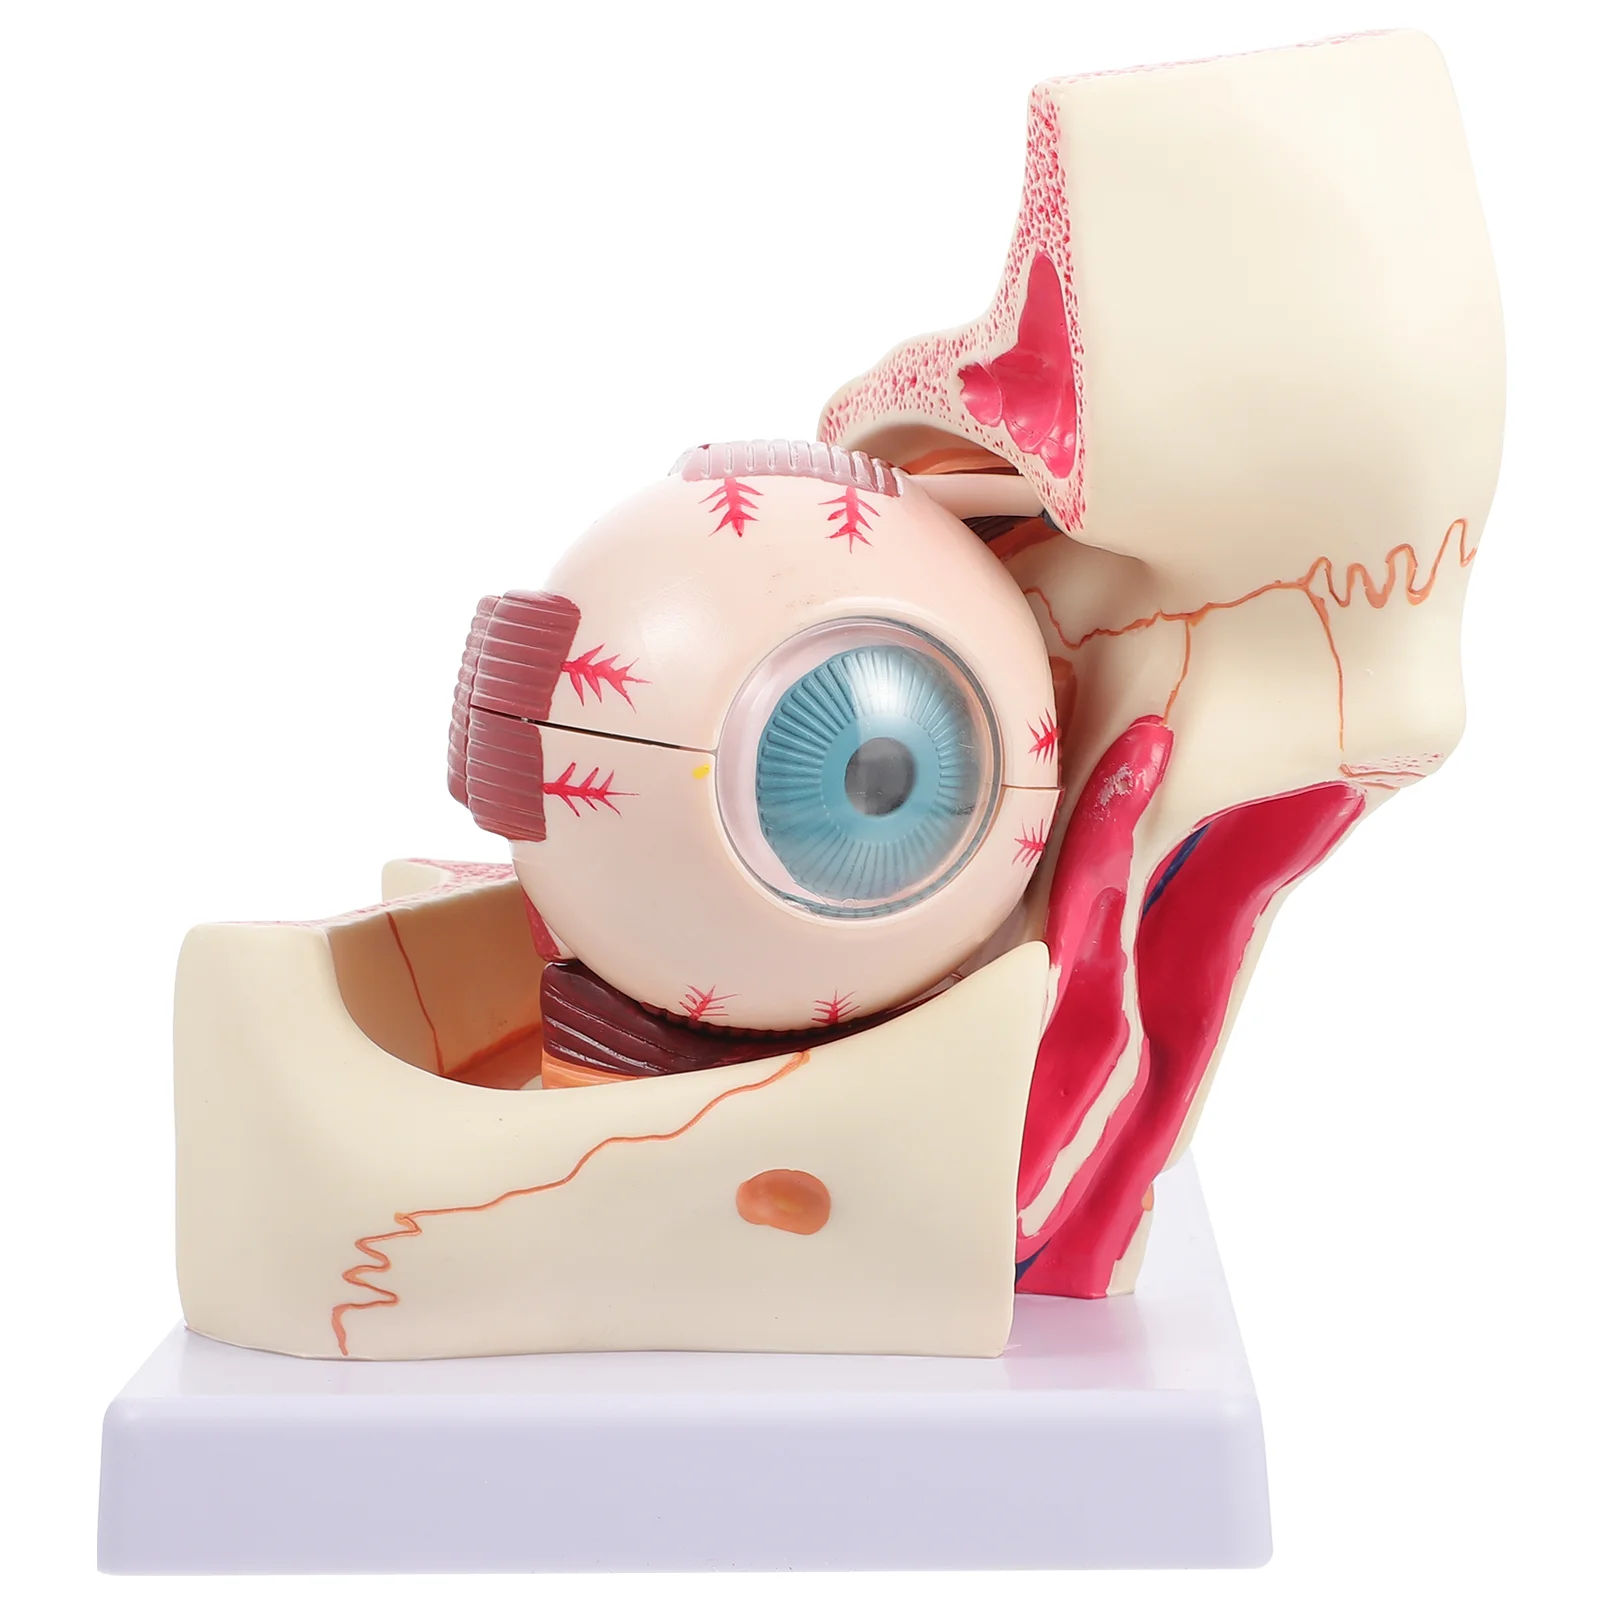 

Модель глаз медицинская патологическая анатомия глазного яблока увеличенный человеческий манекен орбитальное увеличение роговицы